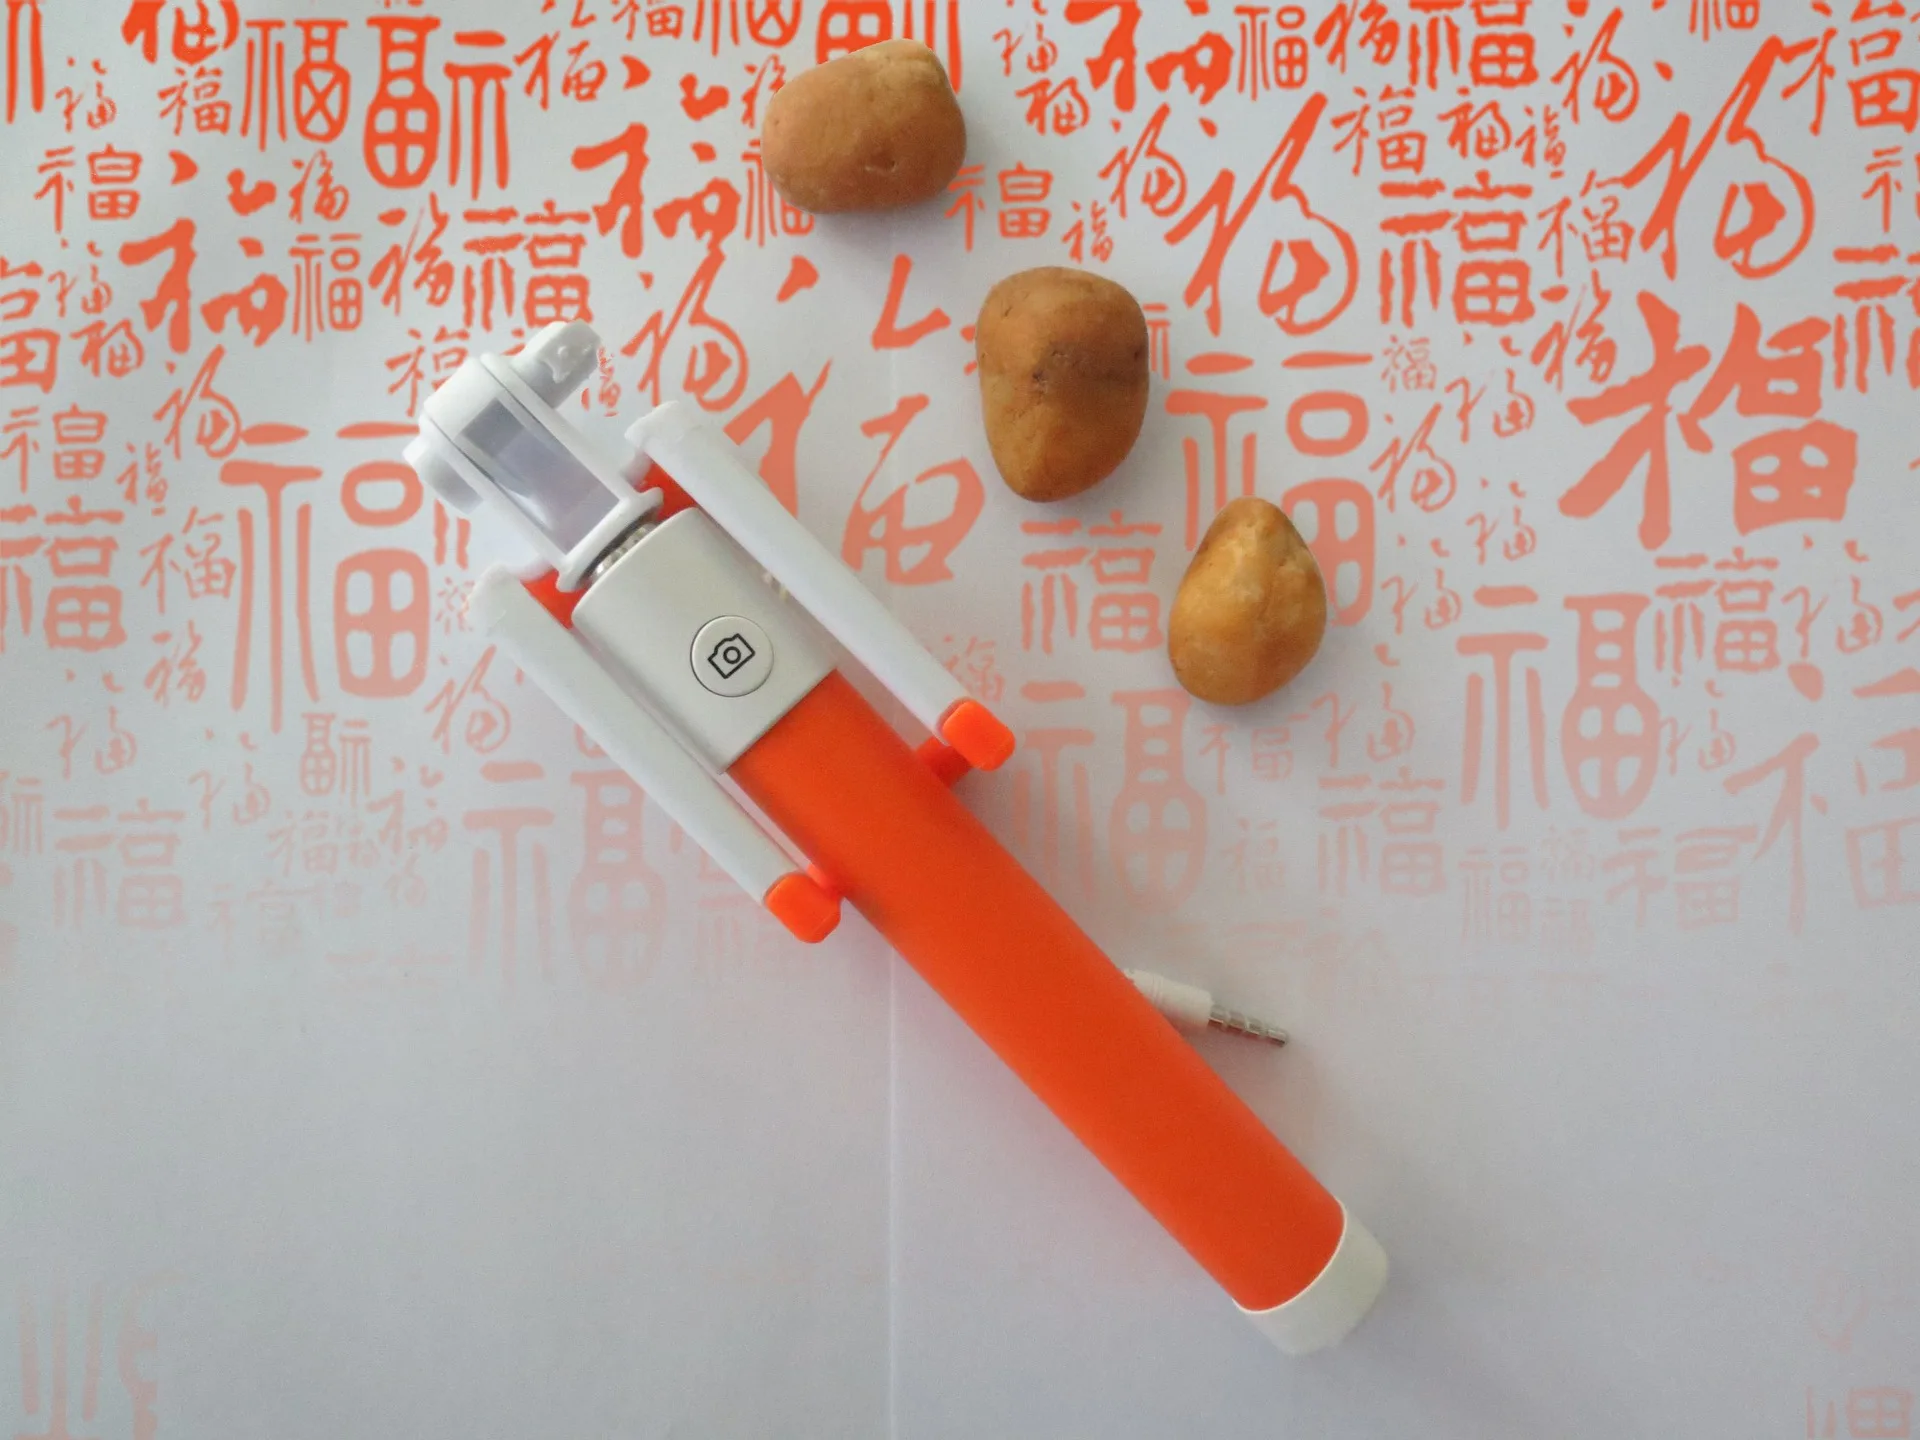 Life Magic Box палки для селфи с проволочным управлением из нержавеющей стали мини-монопод на заказ для huawei Iphone Xiaomi samsung - Цвет: Оранжевый